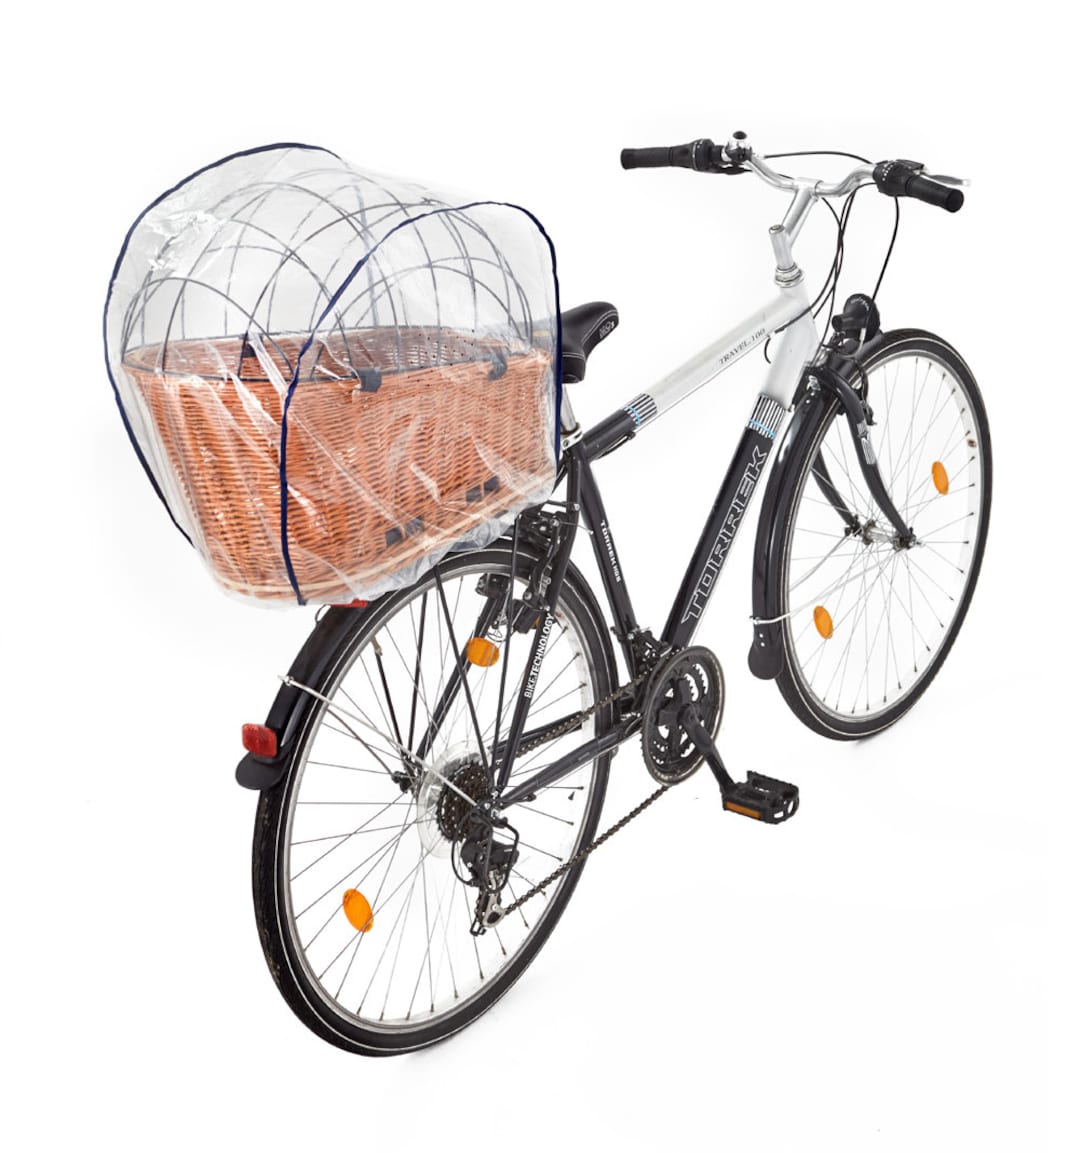 Regenhaube Regenschutzhaube Für Hundefahrradkörbe in Xl Und Xxl